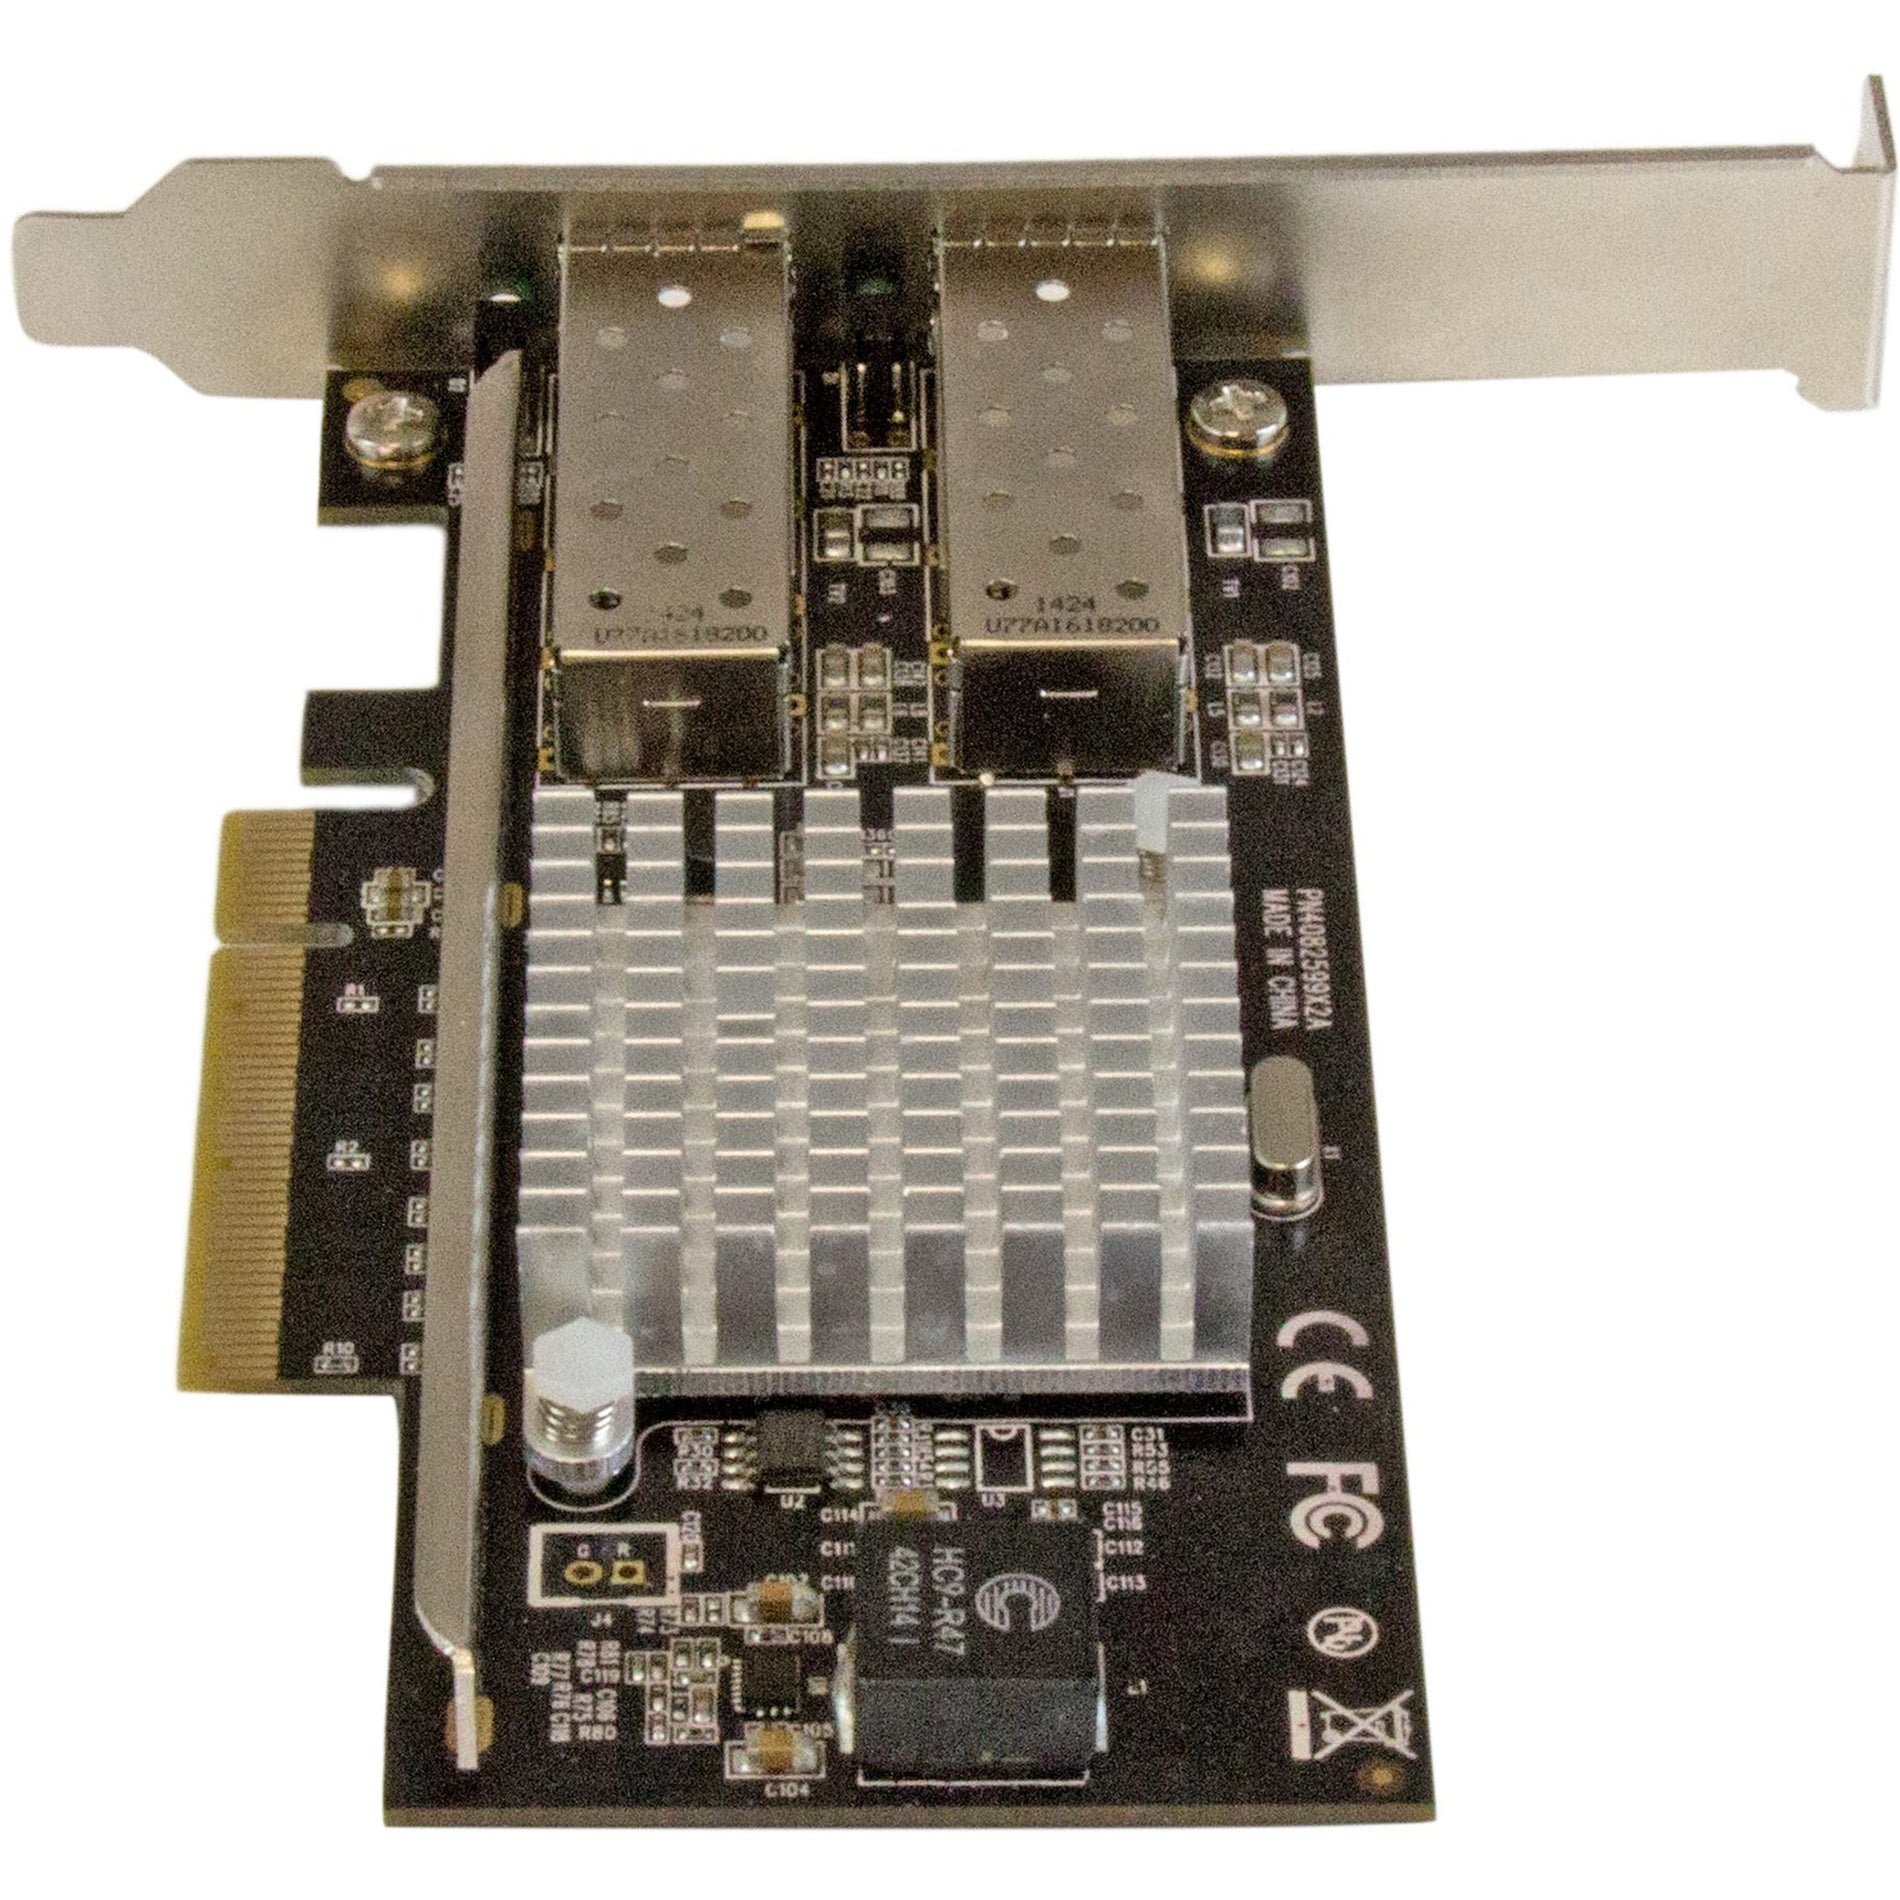 Marca: StarTech.com Tarjeta de red de fibra de 2 puertos 10G con SFP+ abierto - PCIe Chip Intel Conectividad de Ethernet de alta velocidad